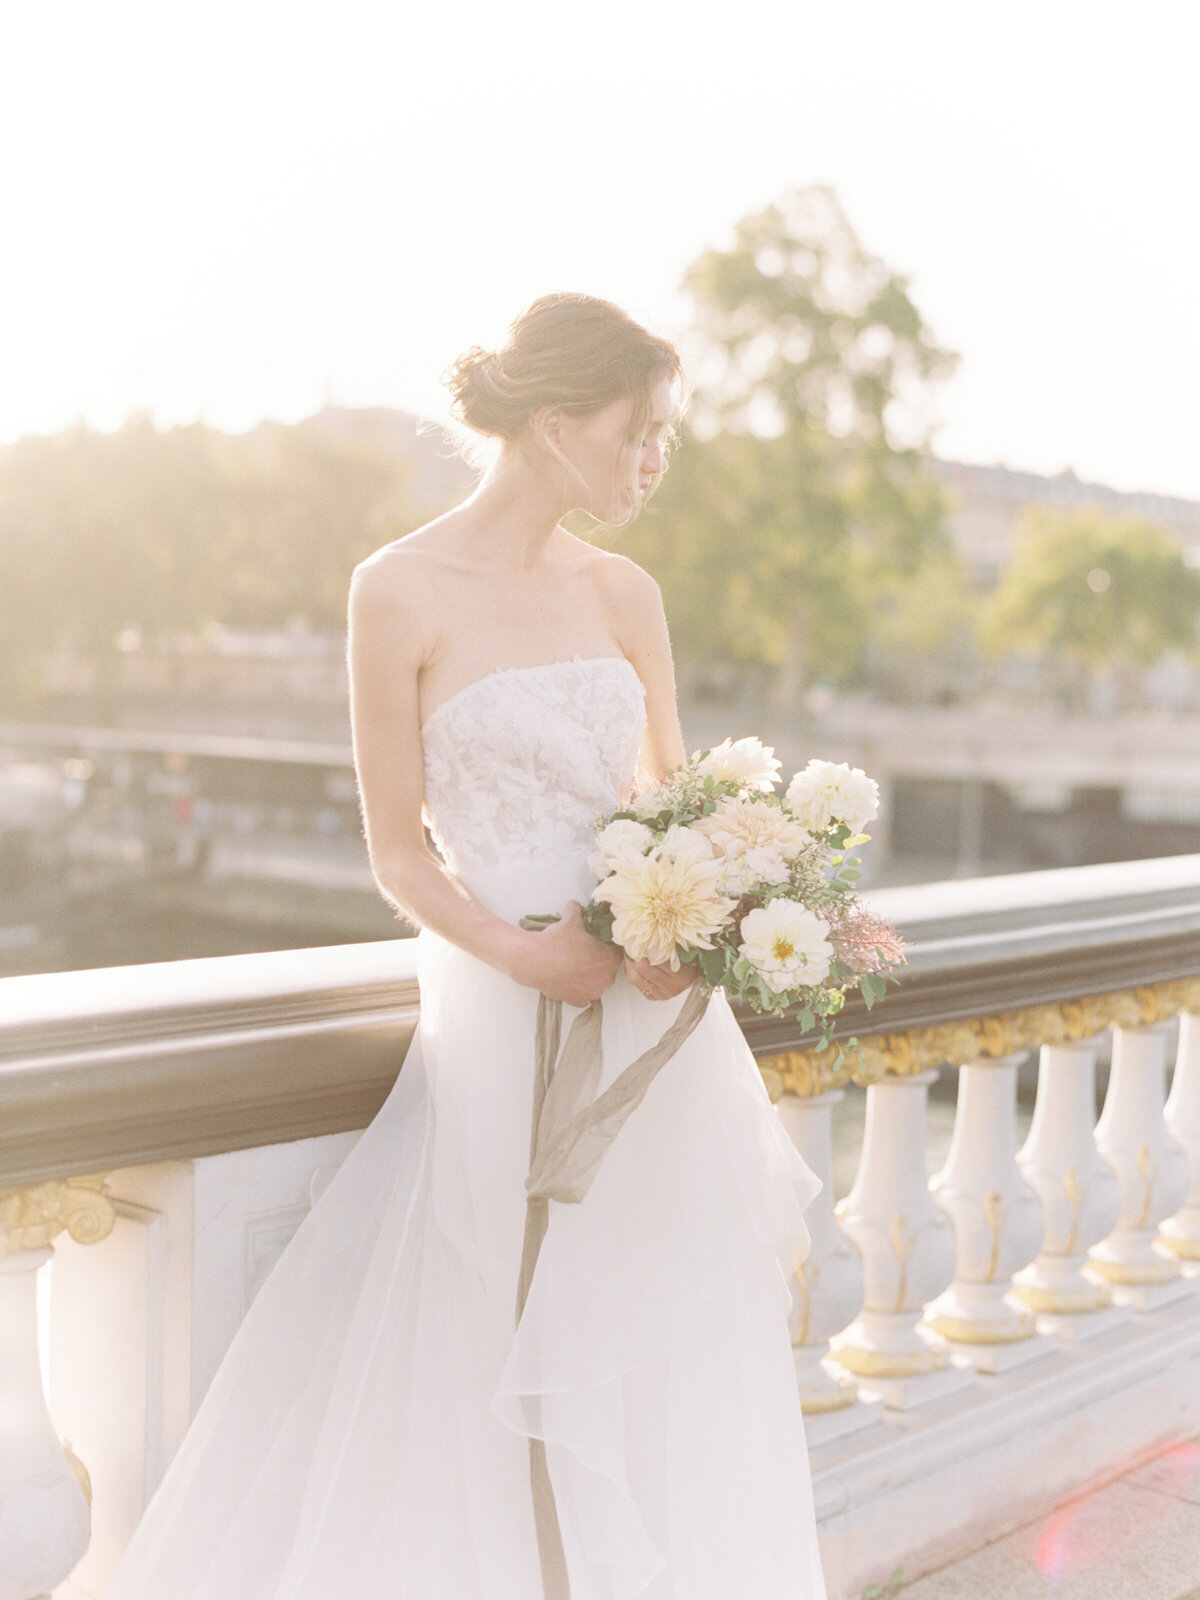 petit-palais-elopement-paris-wedding-photographer-mackenzie-reiter-photography-pont-alexandre-bridge-paris-france-29